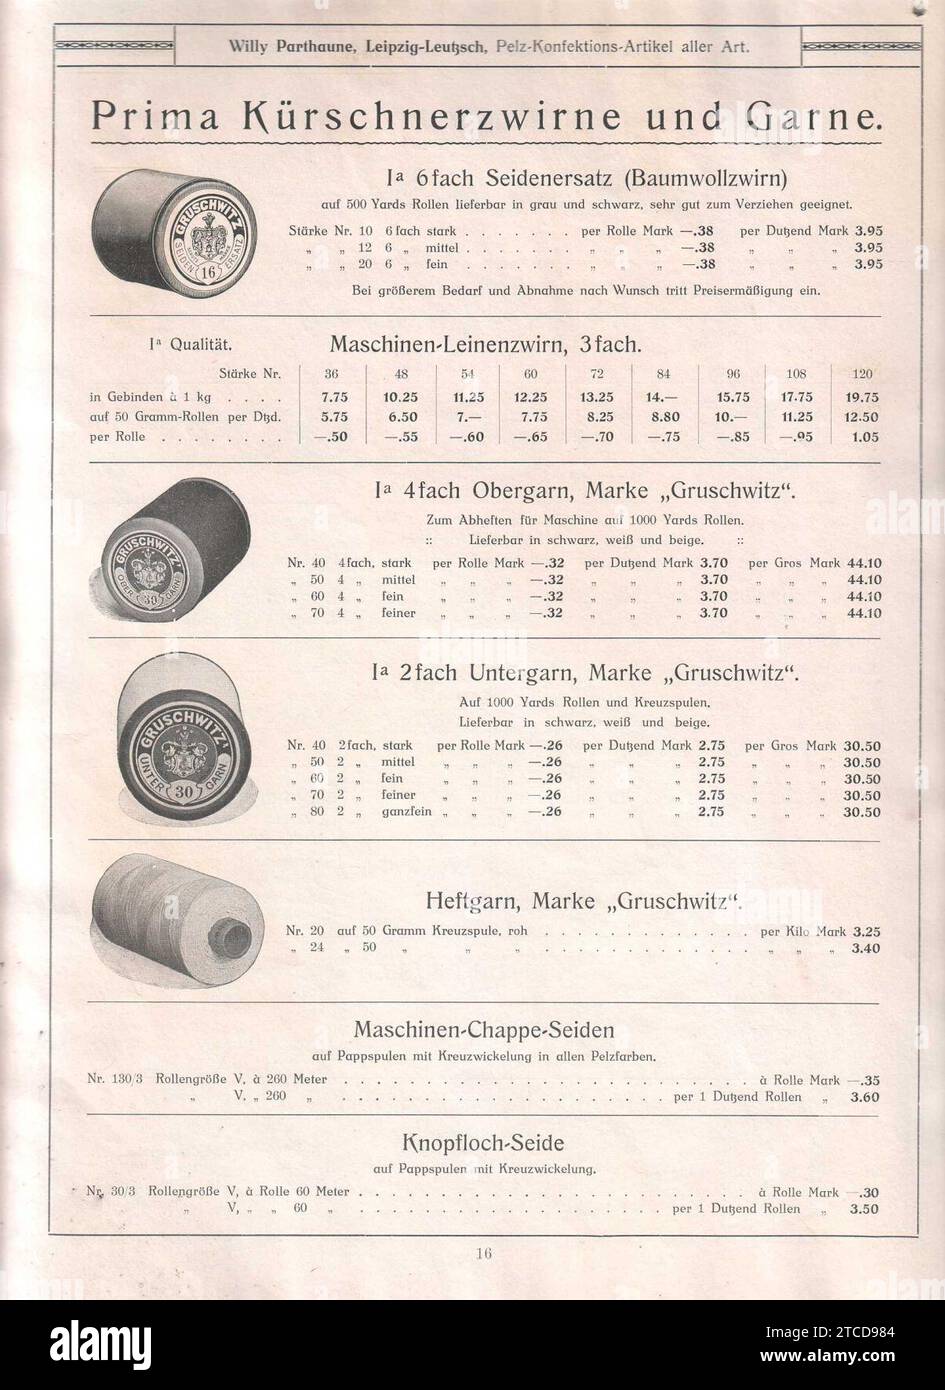 Willi Parthaune, Lipsia-Leutzsch, Pelz-Konfektions-Artikel aller Art (Katalog) (seite 16 Kürschnerzwirne, Garne). Foto Stock